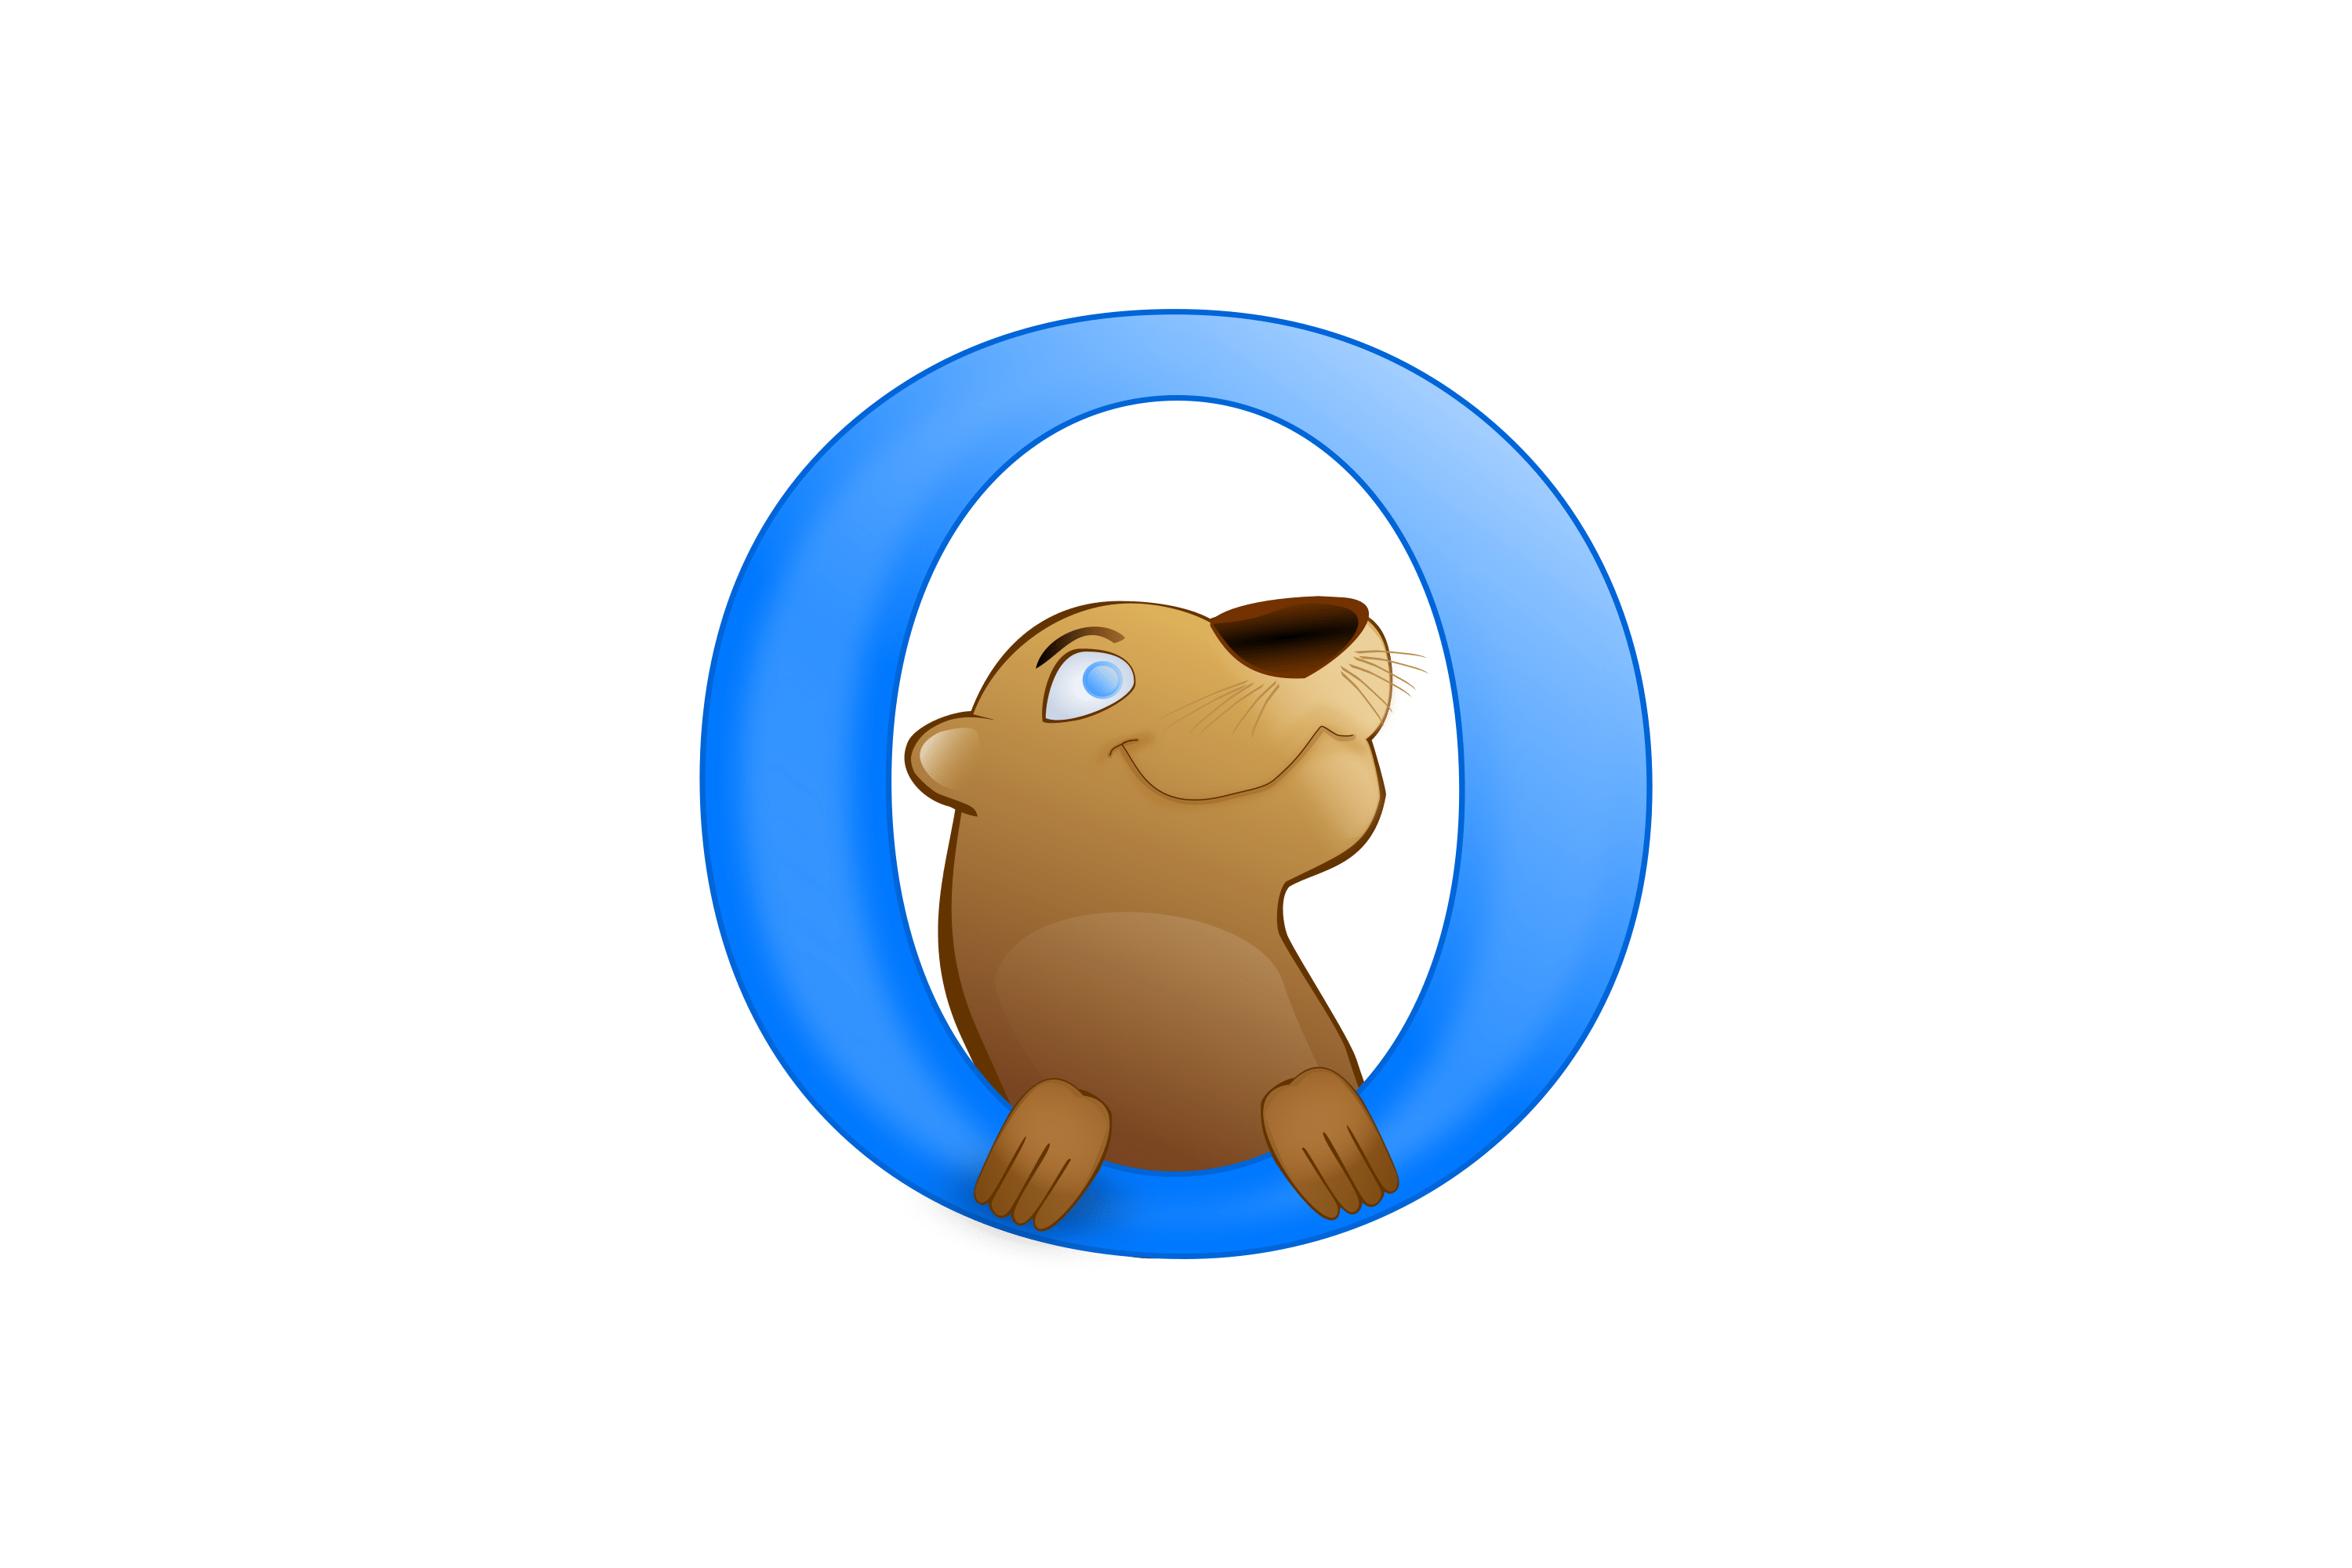 Download Download Otter Browser Logo in SVG Vector or PNG File ...